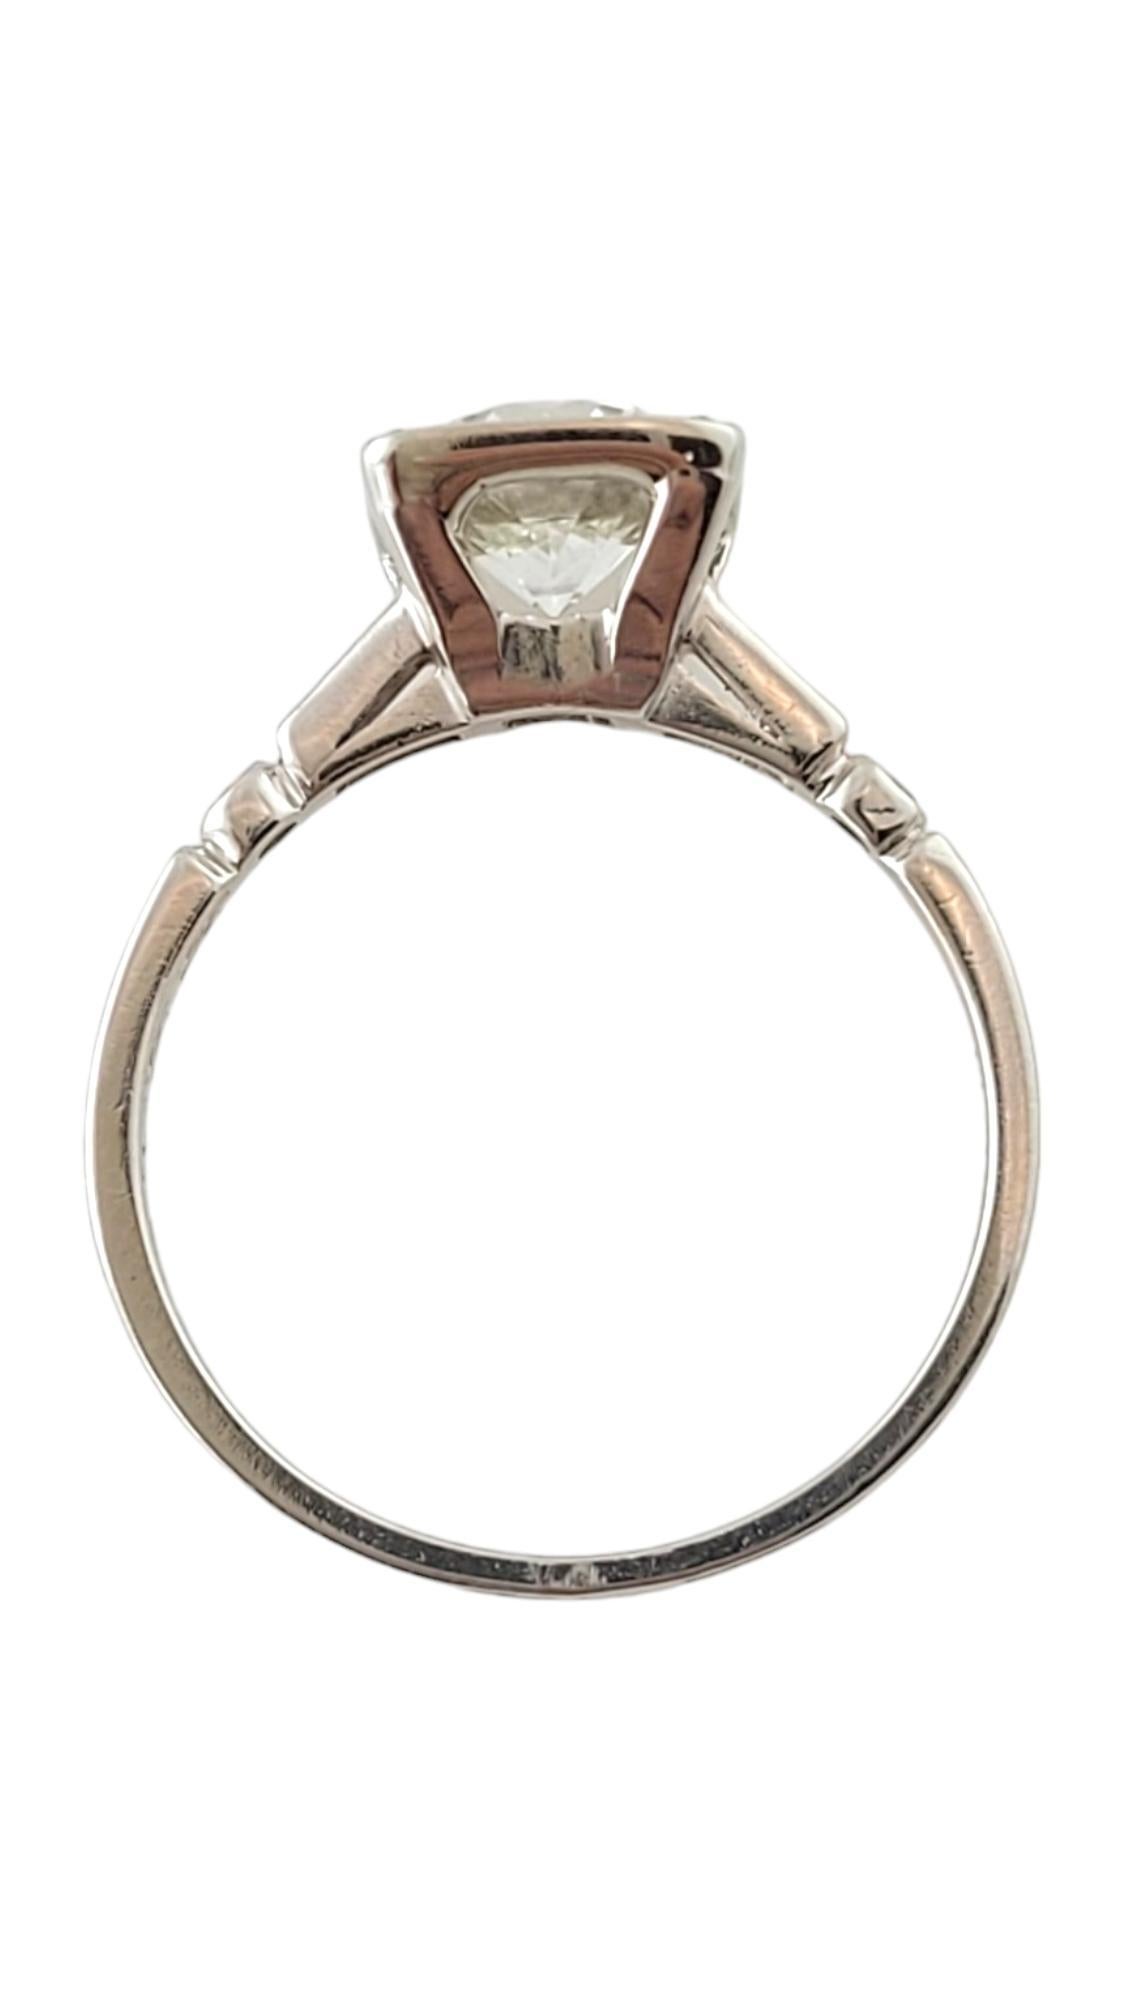 Brilliant Cut Vintage Platinum Old Cut Diamond Engagement Ring Size 6-6.25 #16929 For Sale